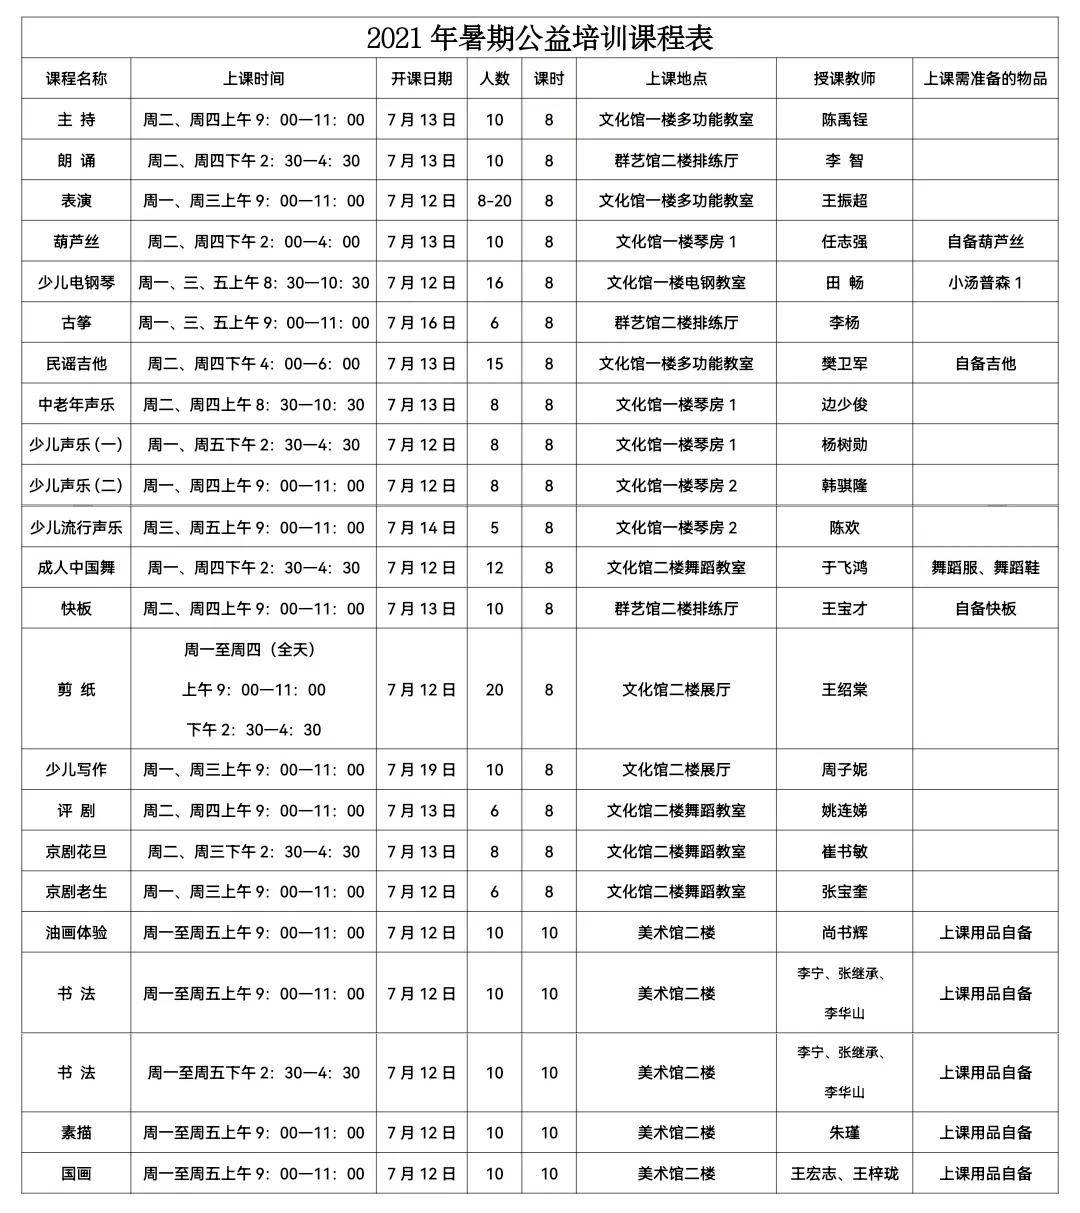 武清区文化馆2021年暑期免费公益培训班上课时间表